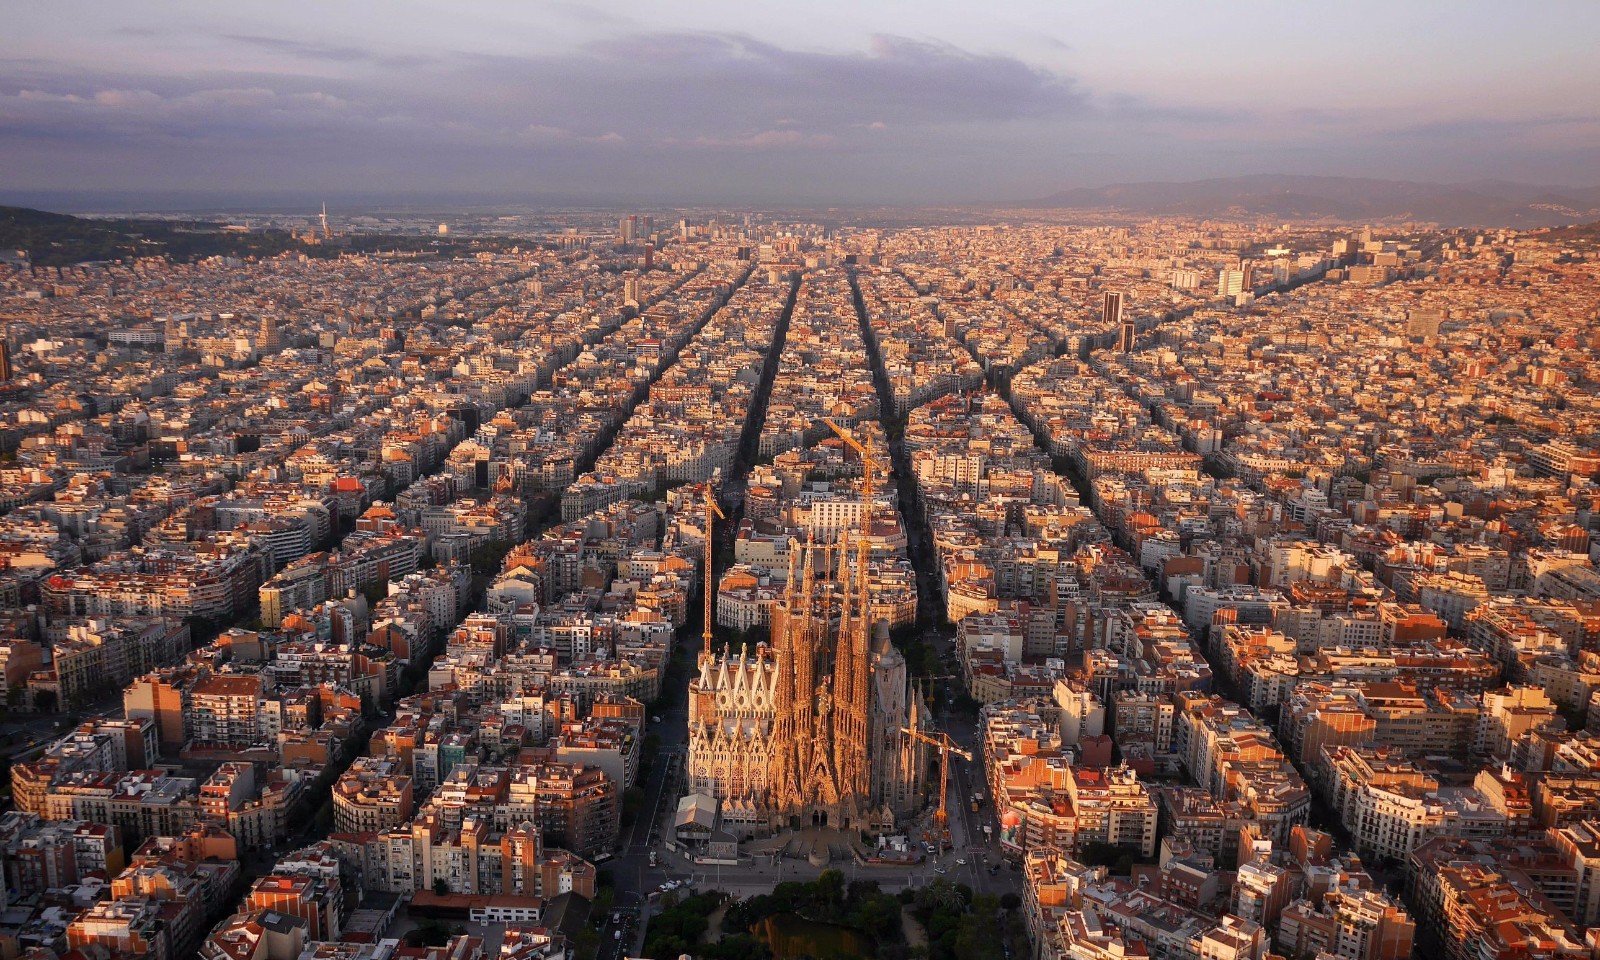 西班牙巴塞罗那,城市与伟大建筑师安东尼奥·高迪的名字紧密相连.